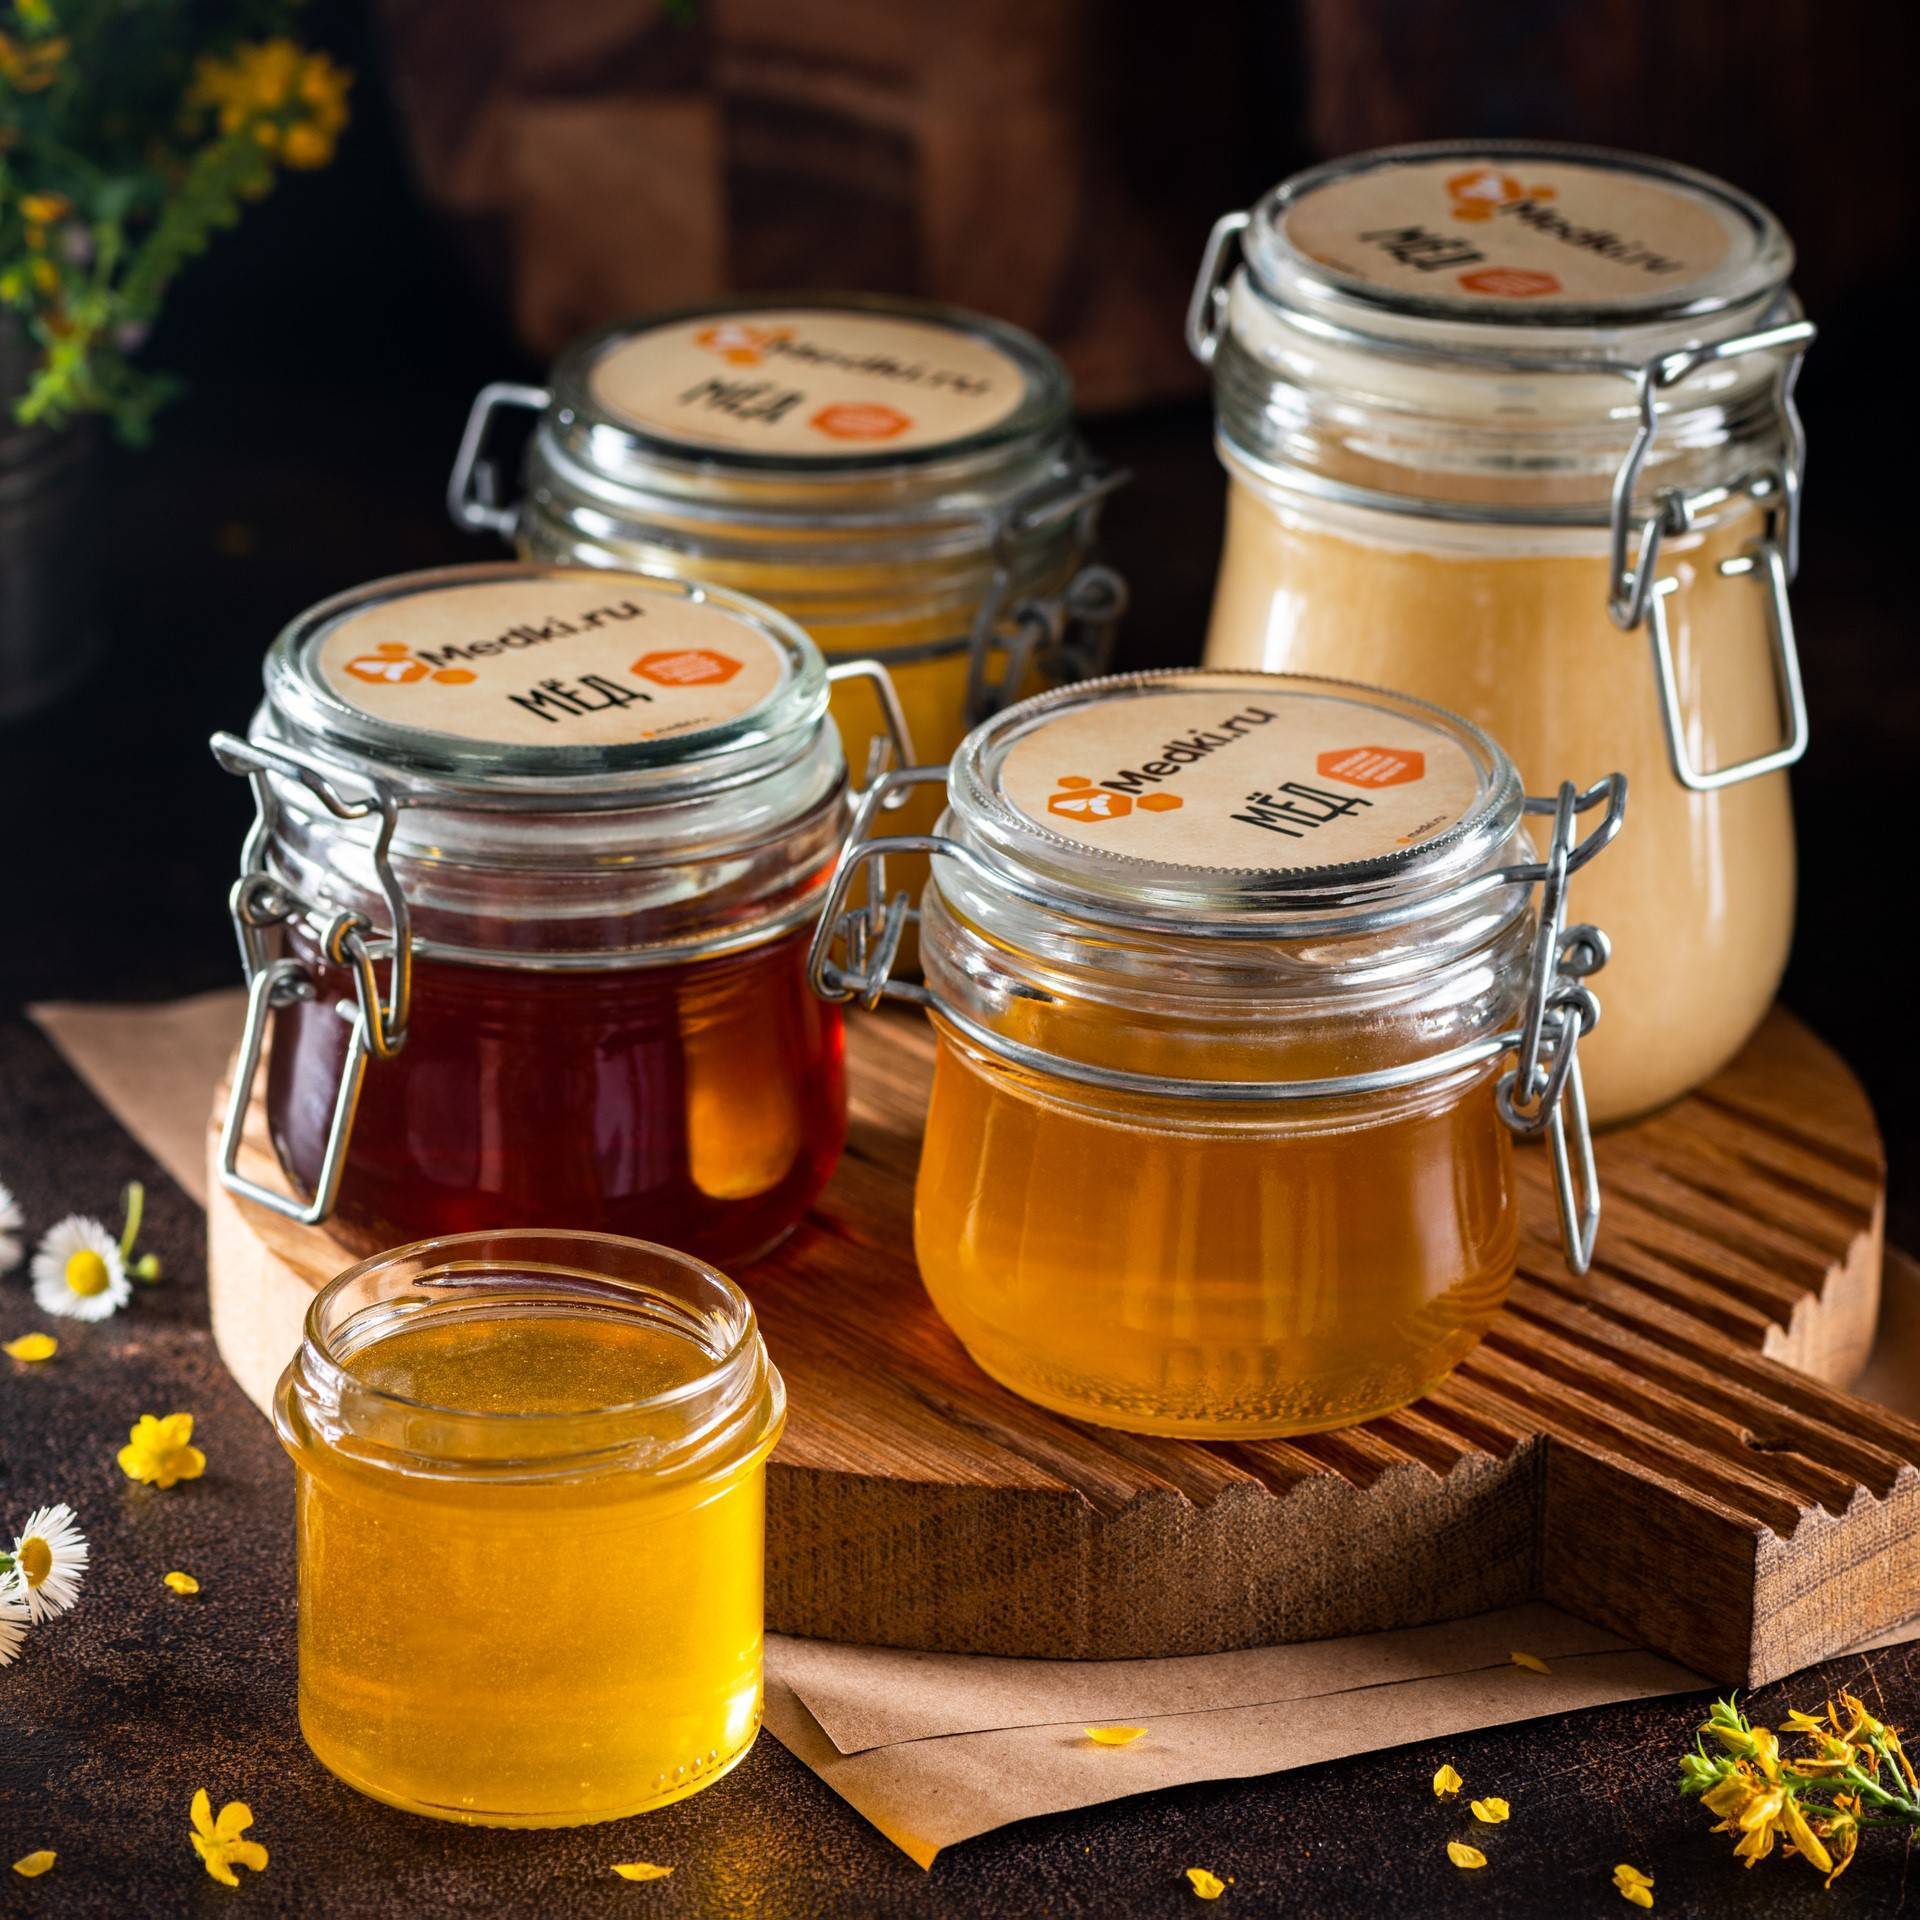 Как хранить мед? хранение меда в домашних условиях :: syl.ru